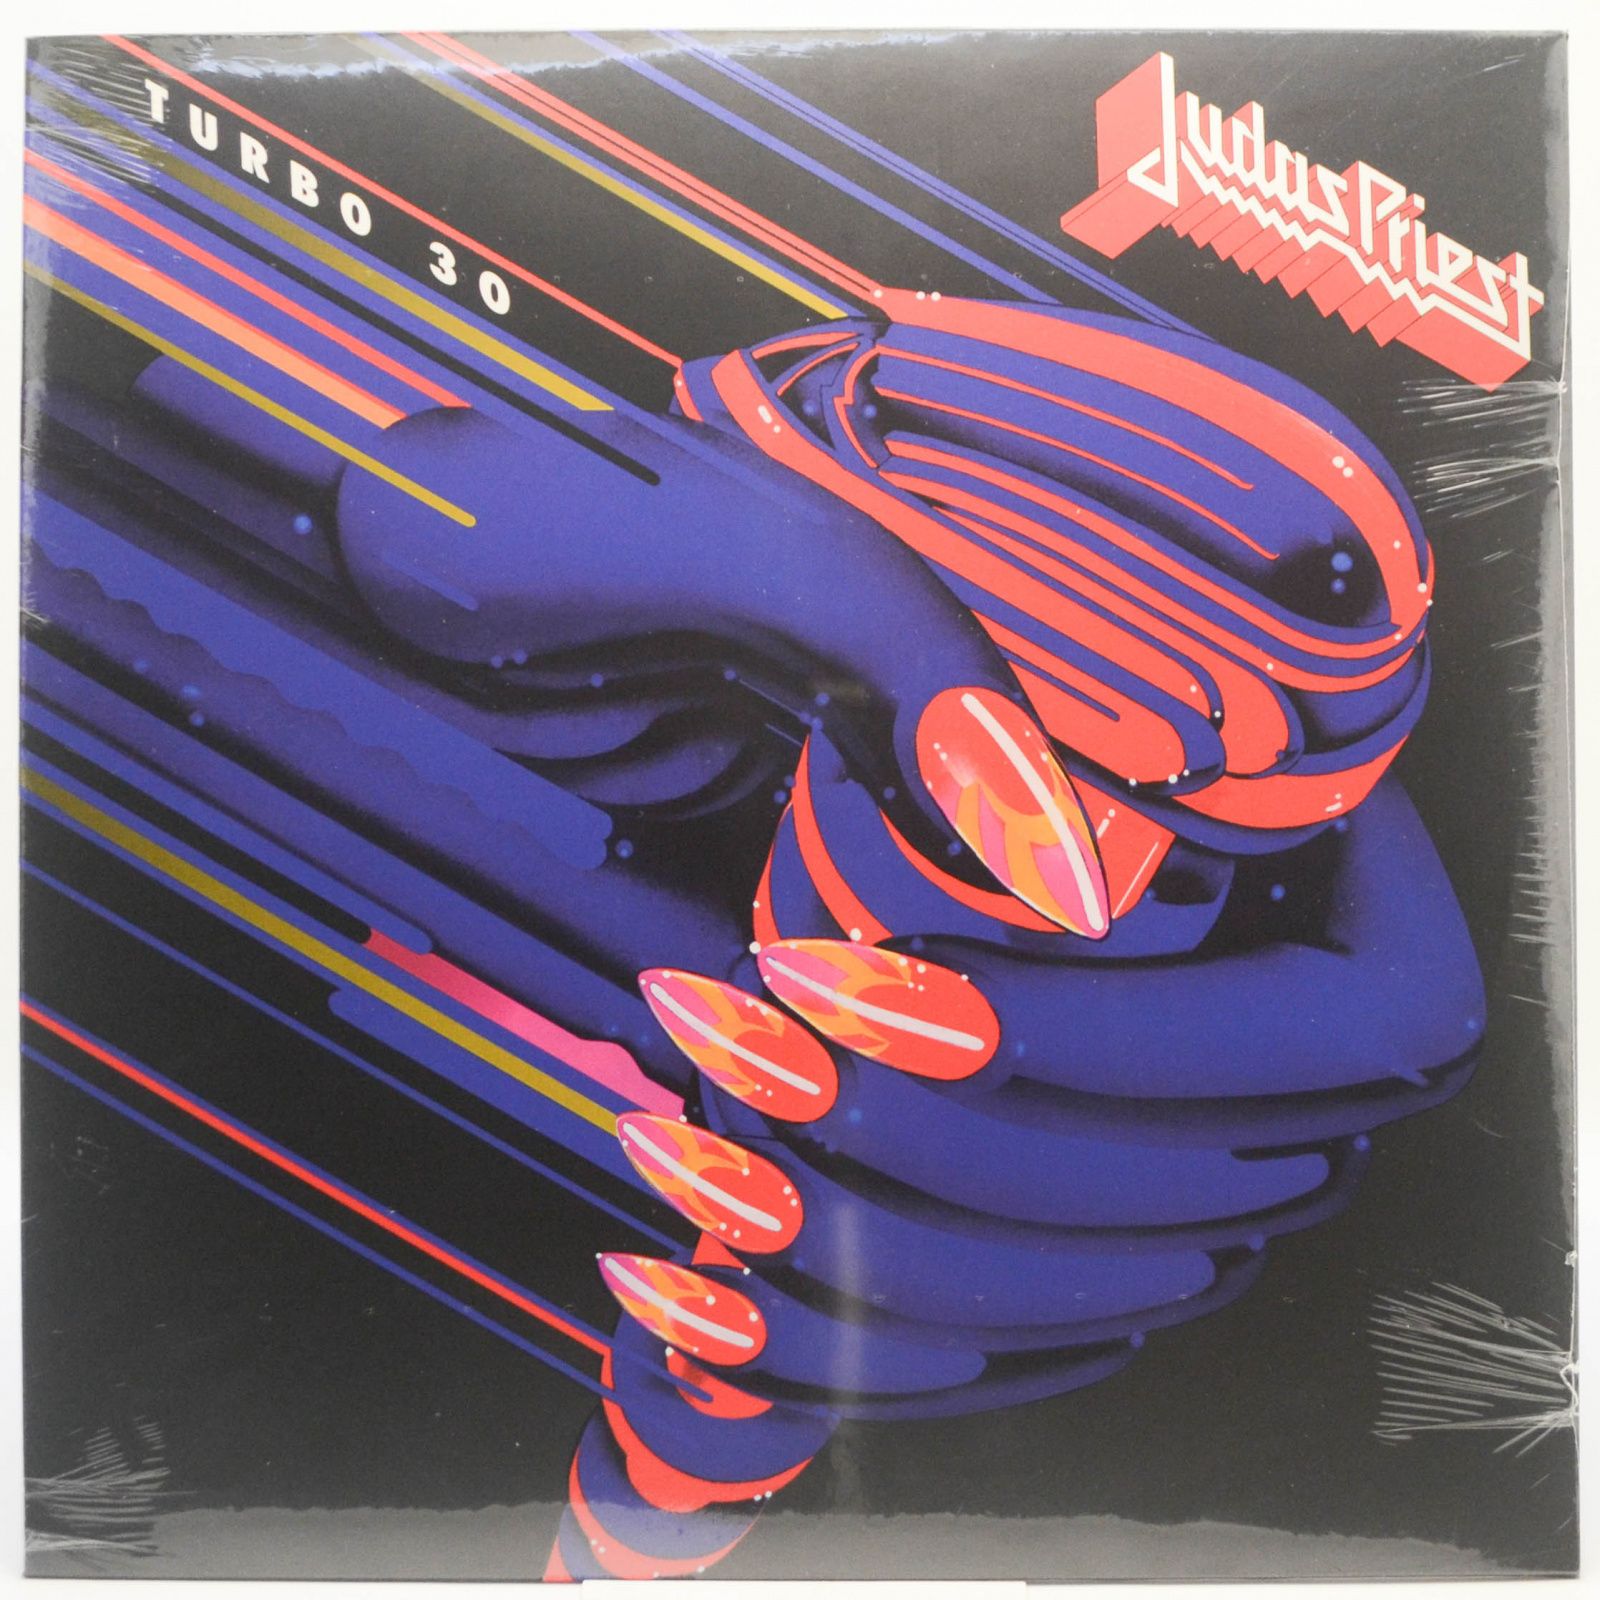 Judas Priest — Turbo 30, 2017